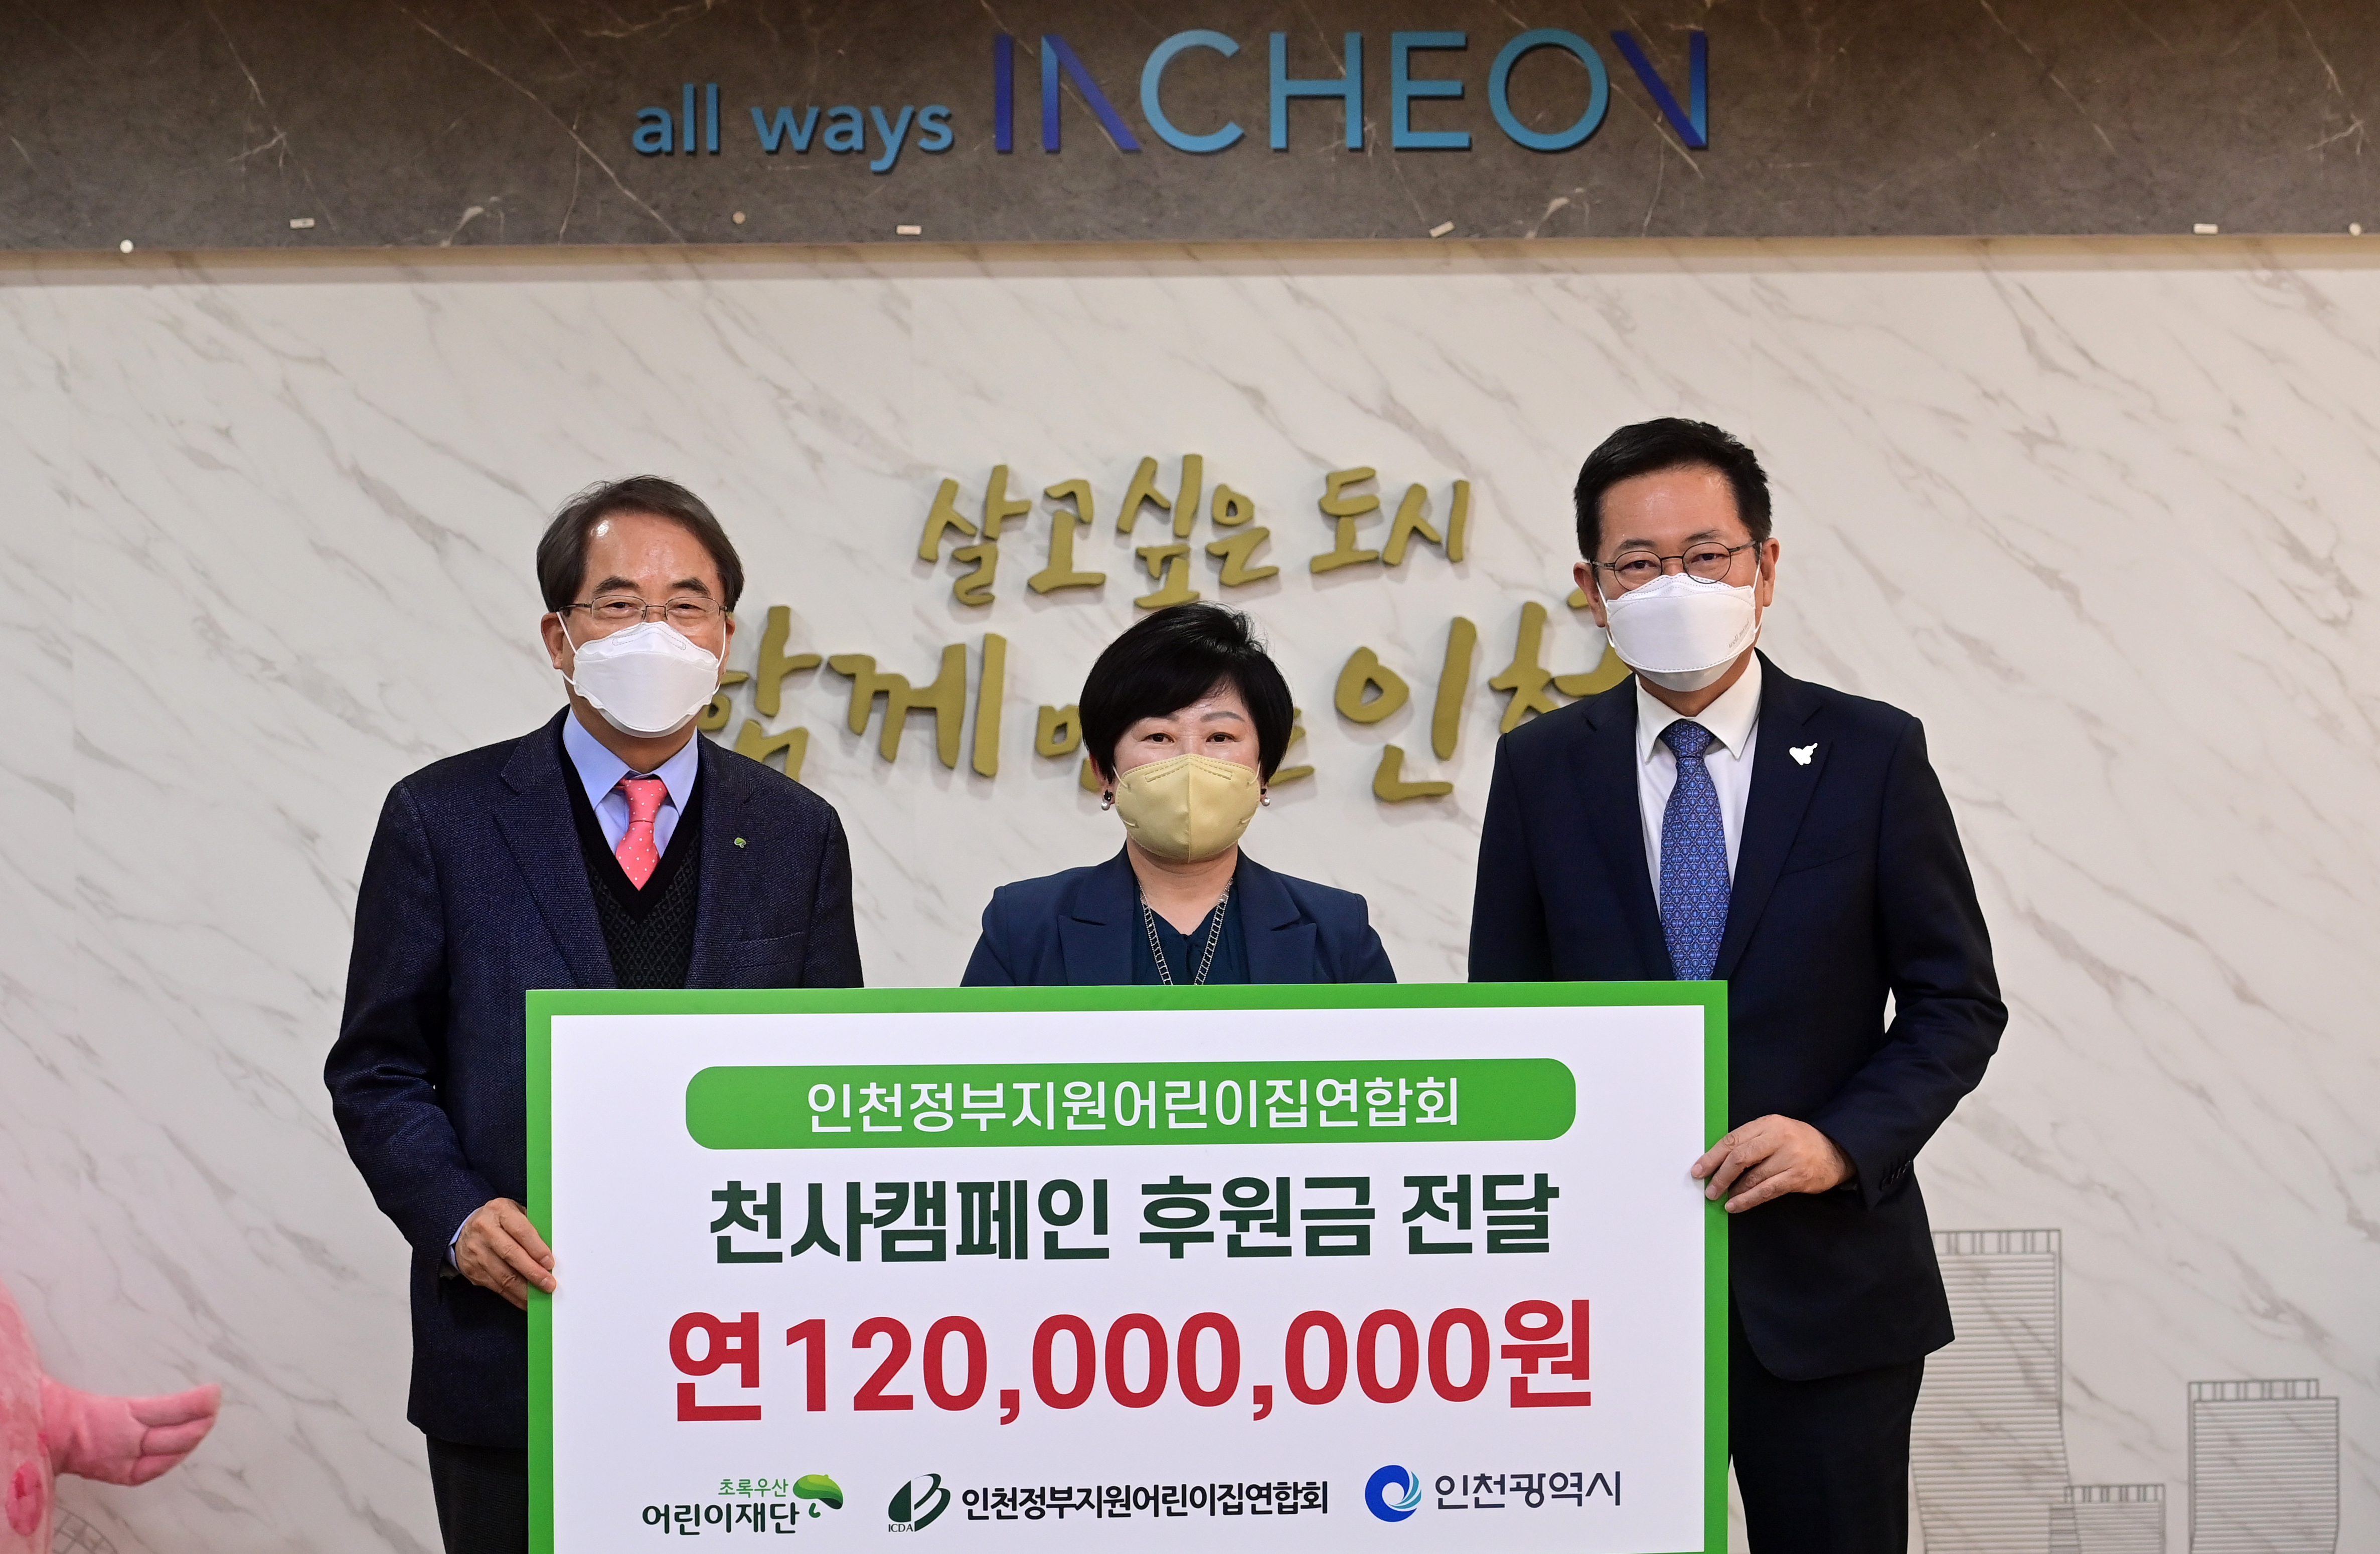 ‘인천시 천사캠페인’후원금 1억2천만 원 전달 관련 이미지